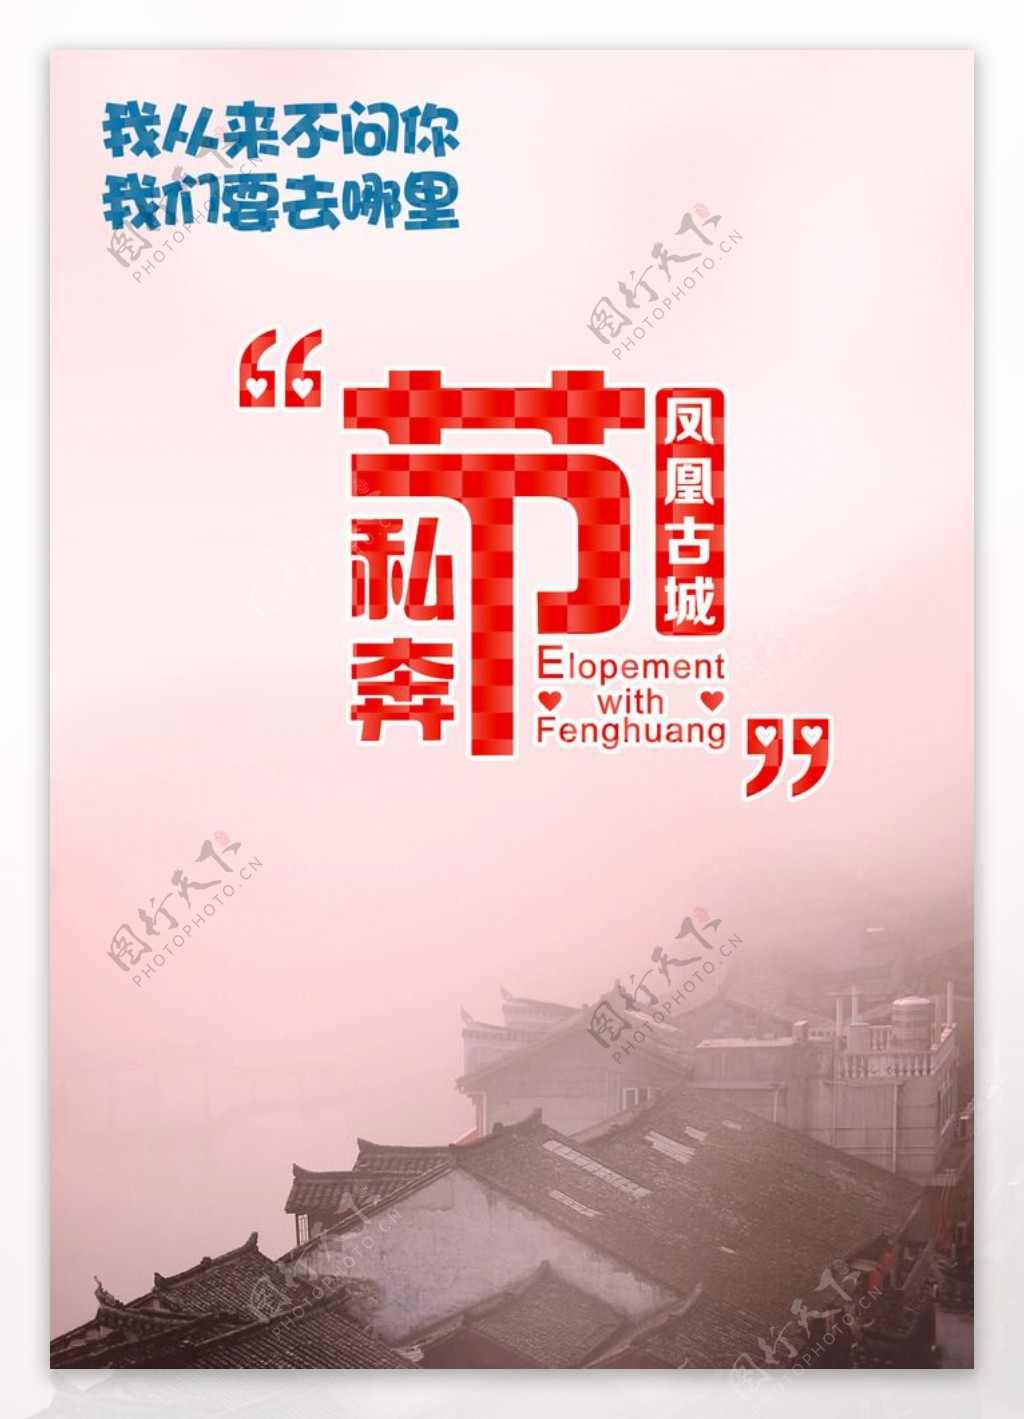 凤凰古城旅游创意海报图片